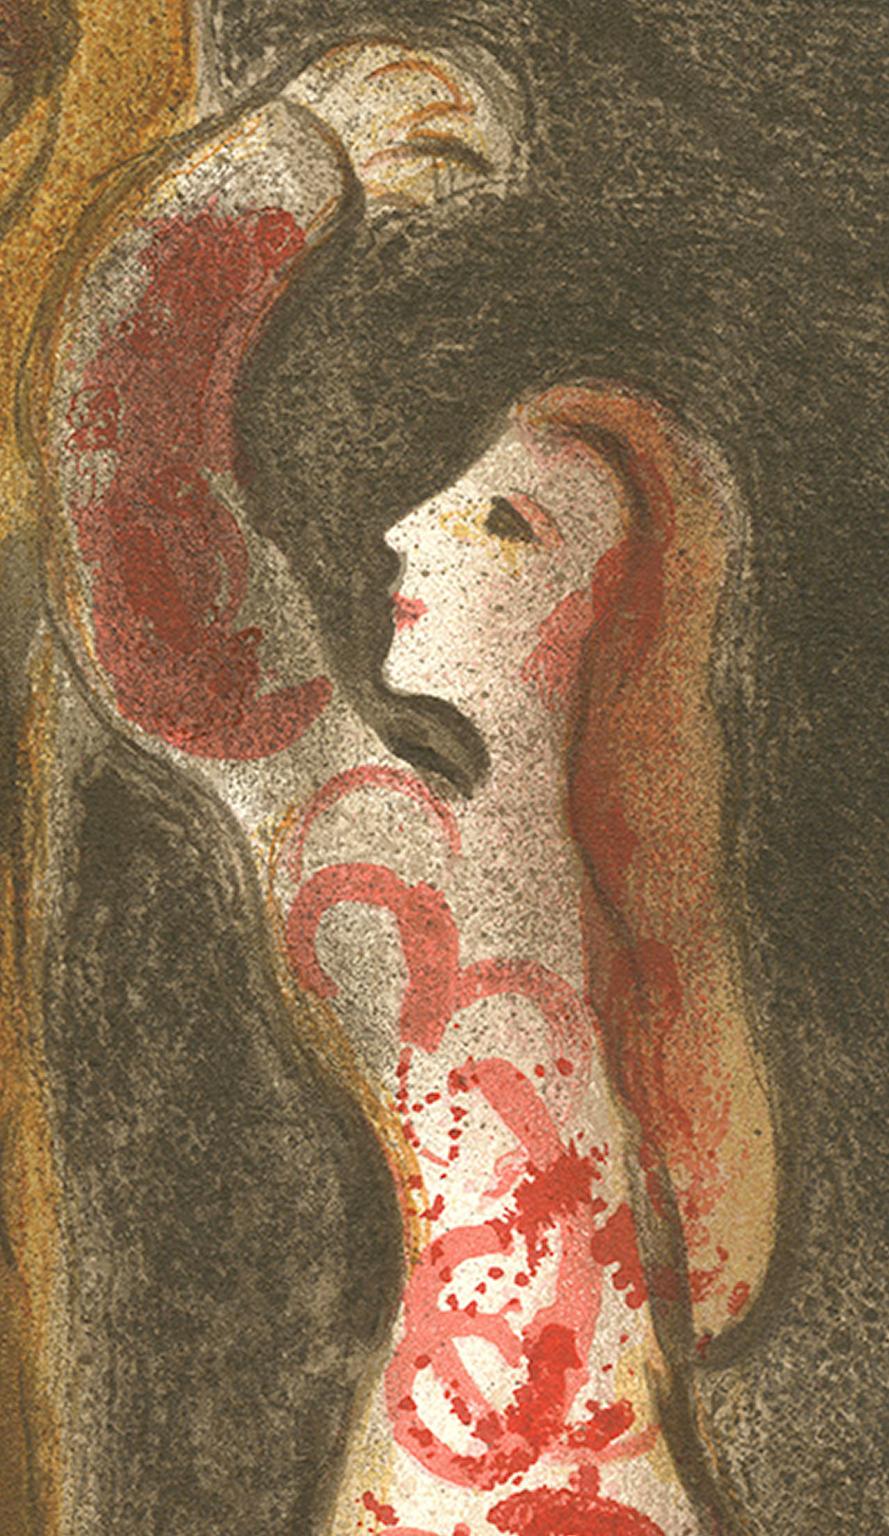 20e siècle couleur brun foncé lithographie homme et femme personnages rouge jaune - Print de Marc Chagall